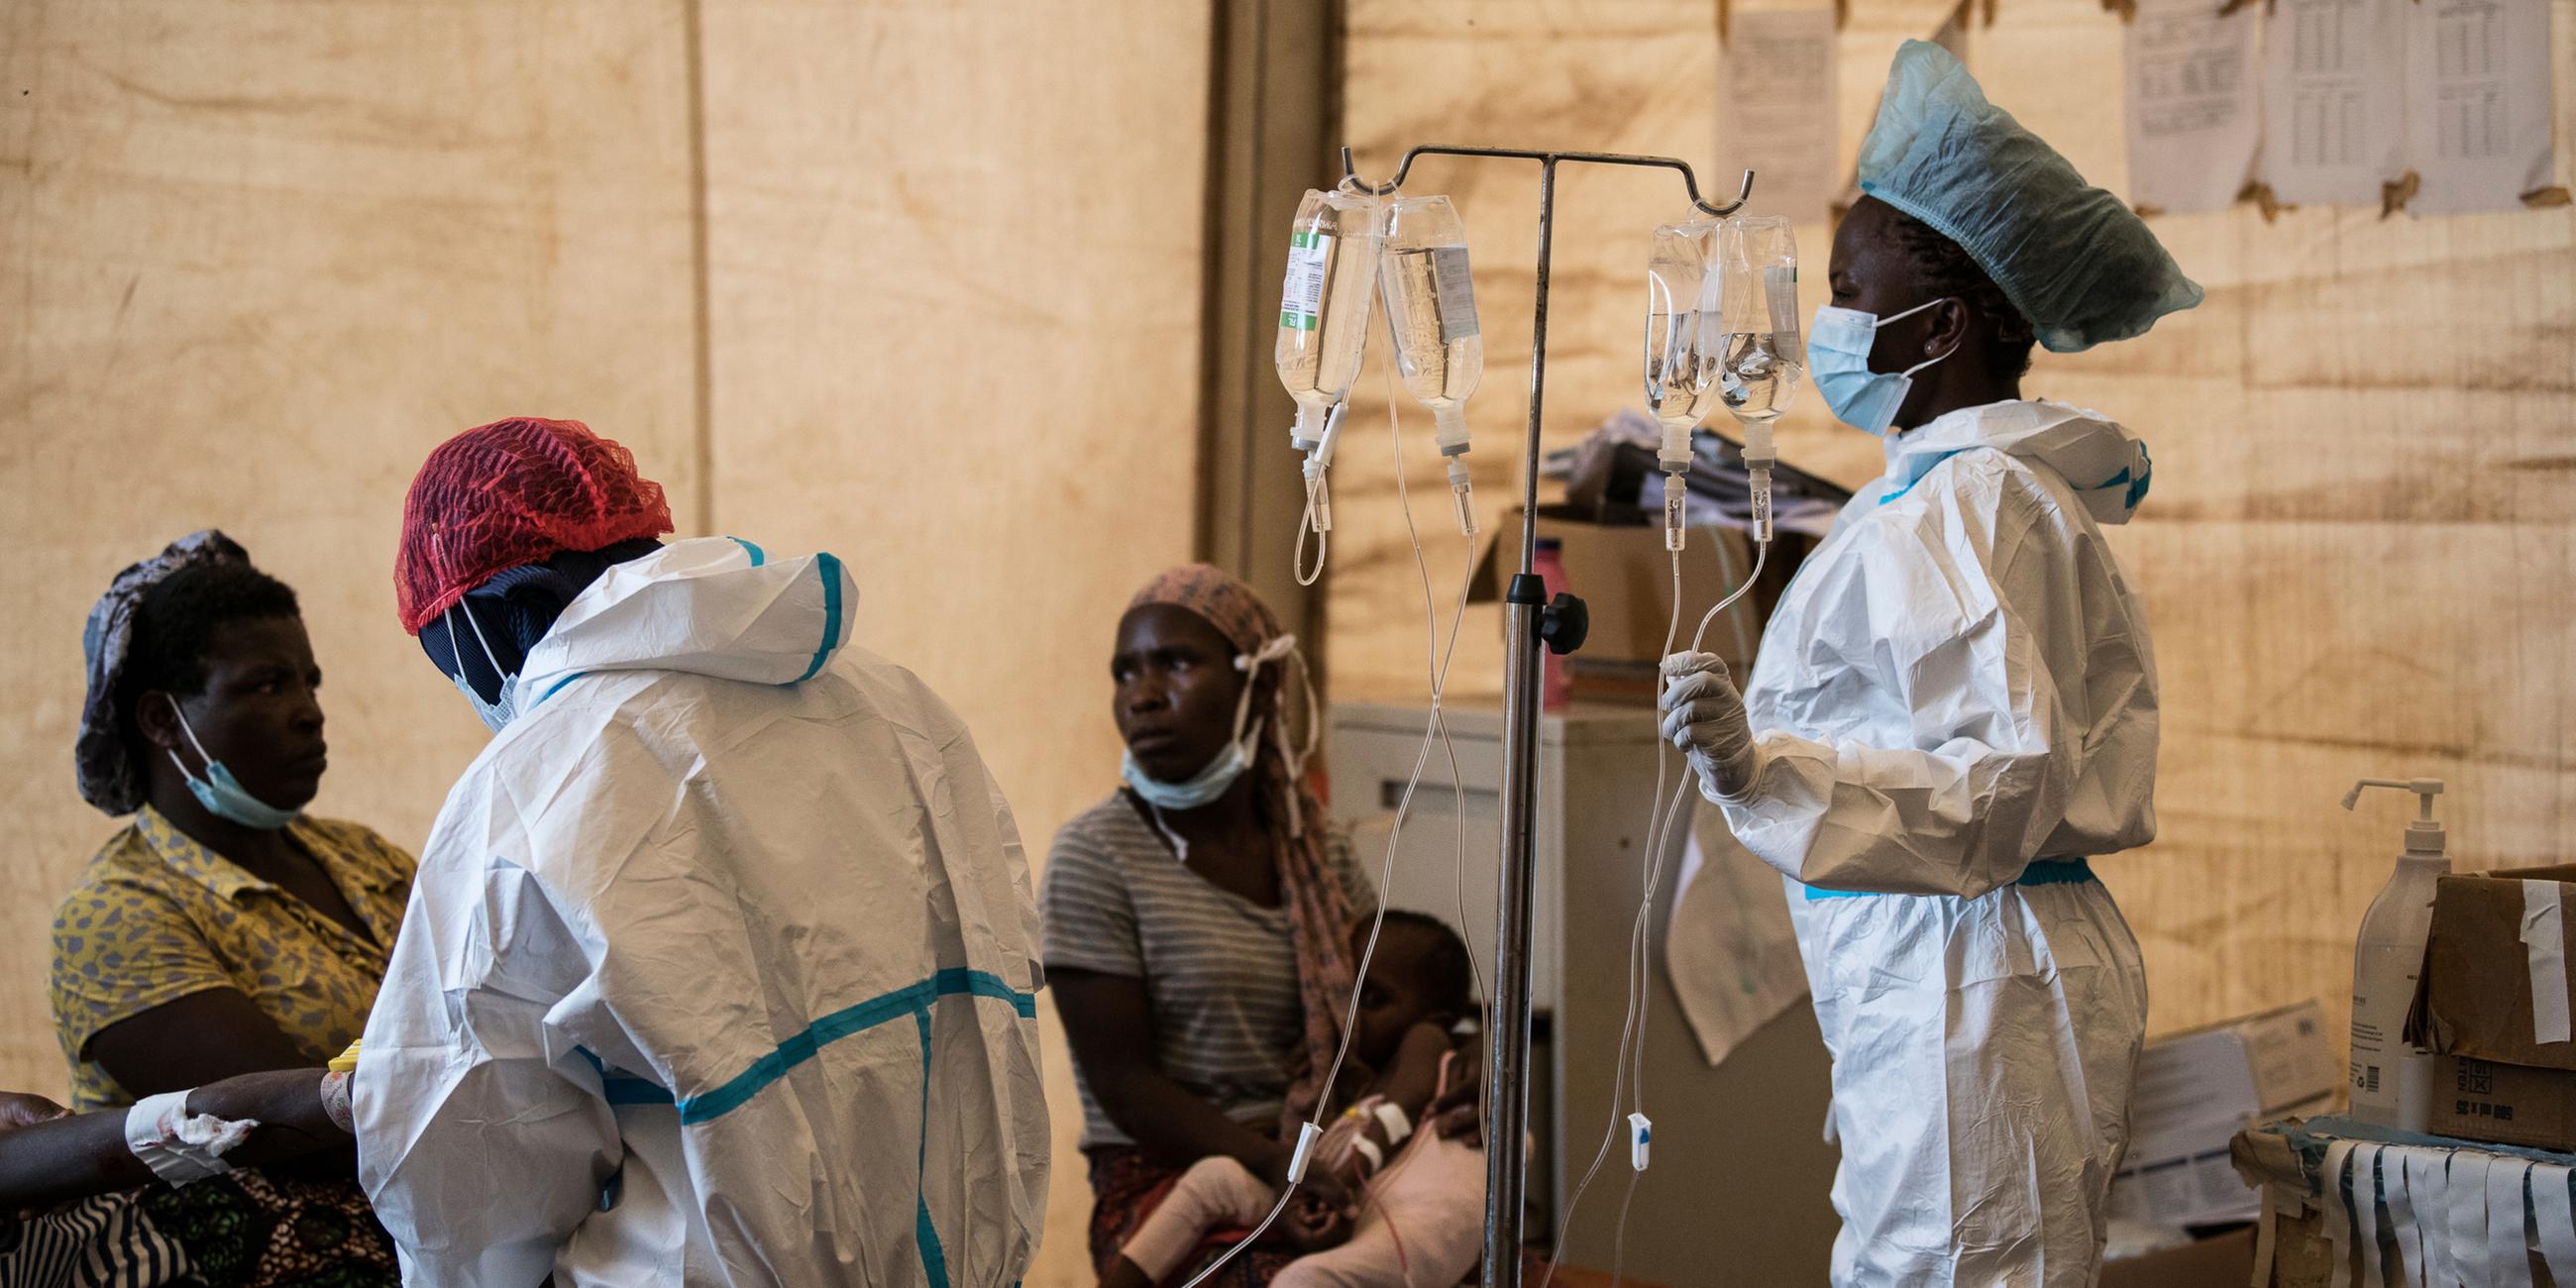 Gesundheitspersonal behandelt Cholera-Patienten in Malawi. (Archivbild)